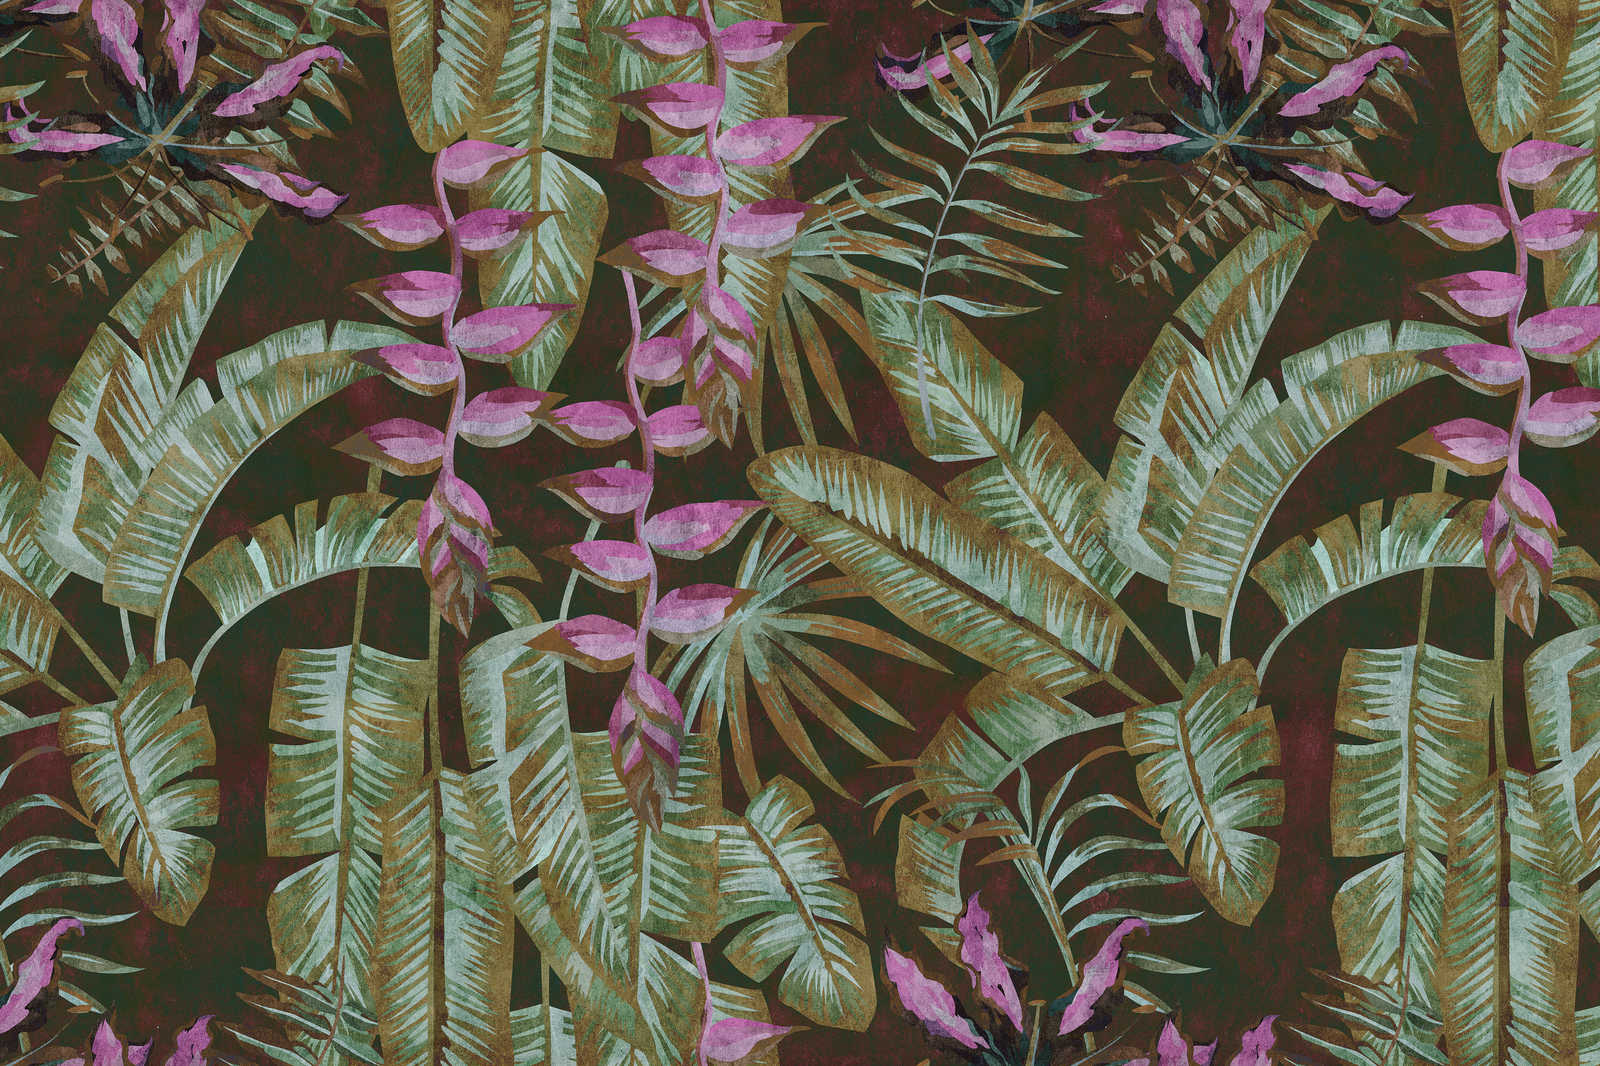             Tropicana 1 - Quadro su tela della giungla con foglie di banano e felci - 0,90 m x 0,60 m
        